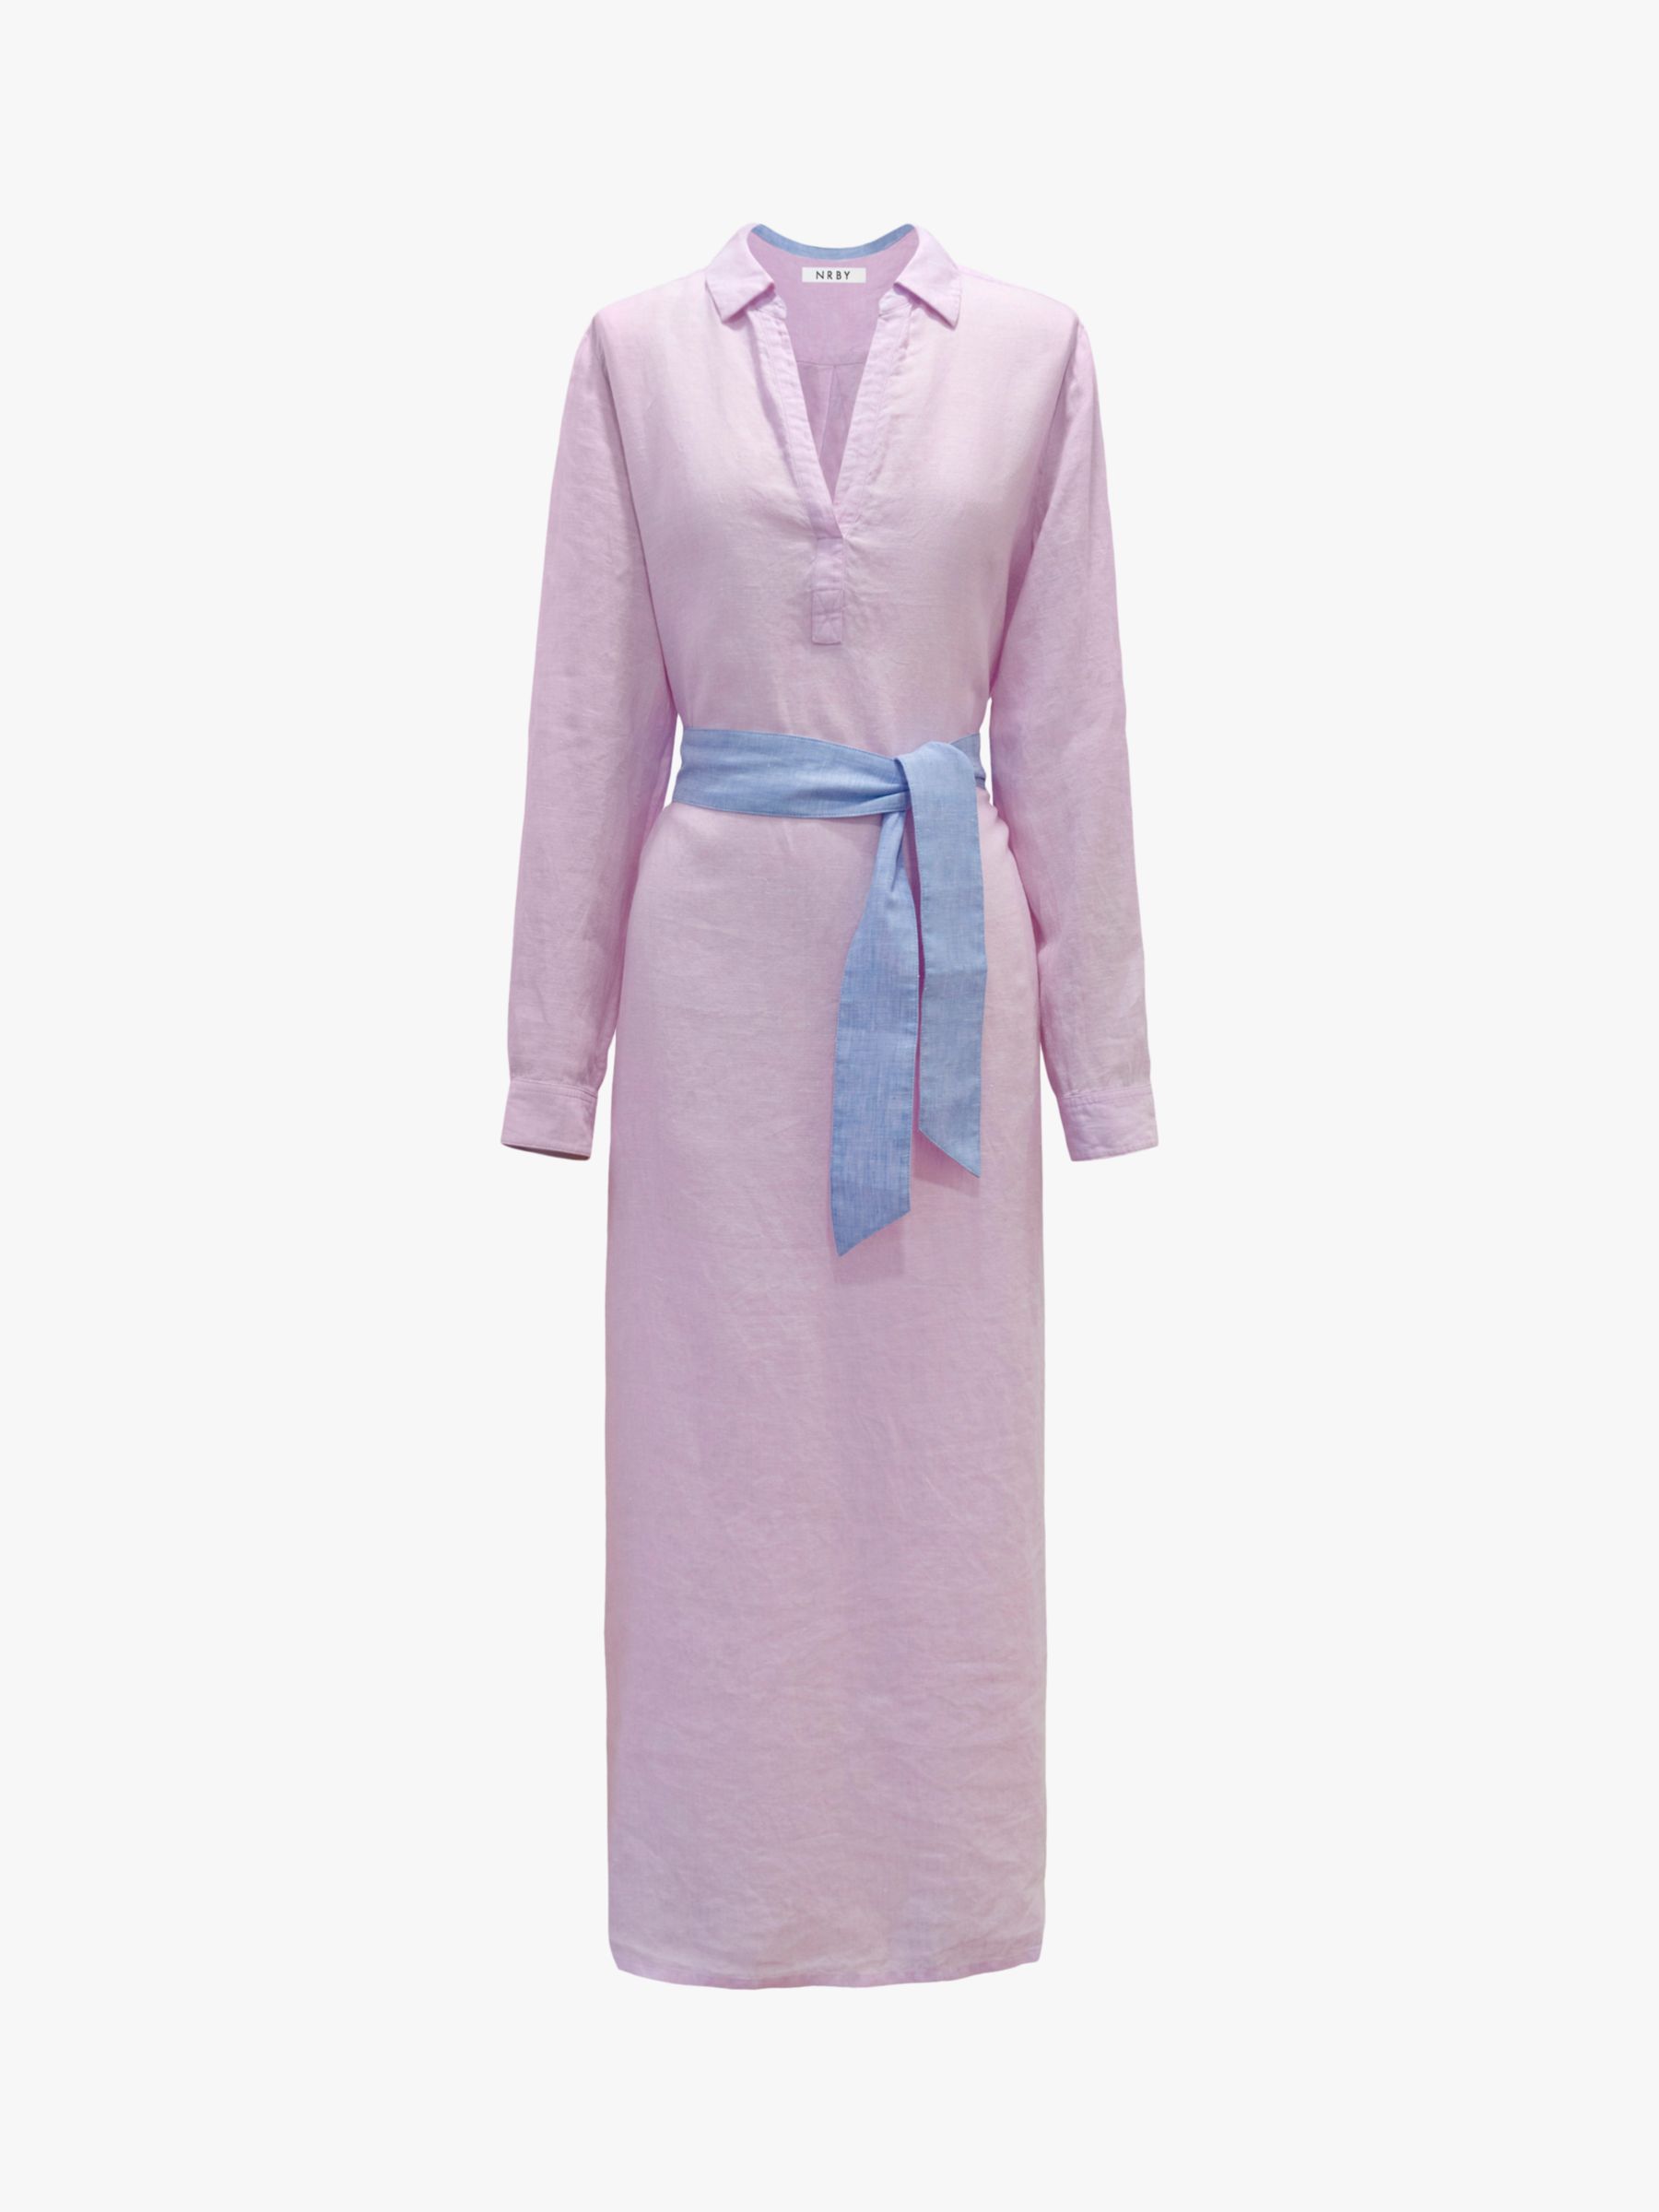 NRBY Chrissie Linen Maxi Shirt Dress, Pink Sorbet, XS